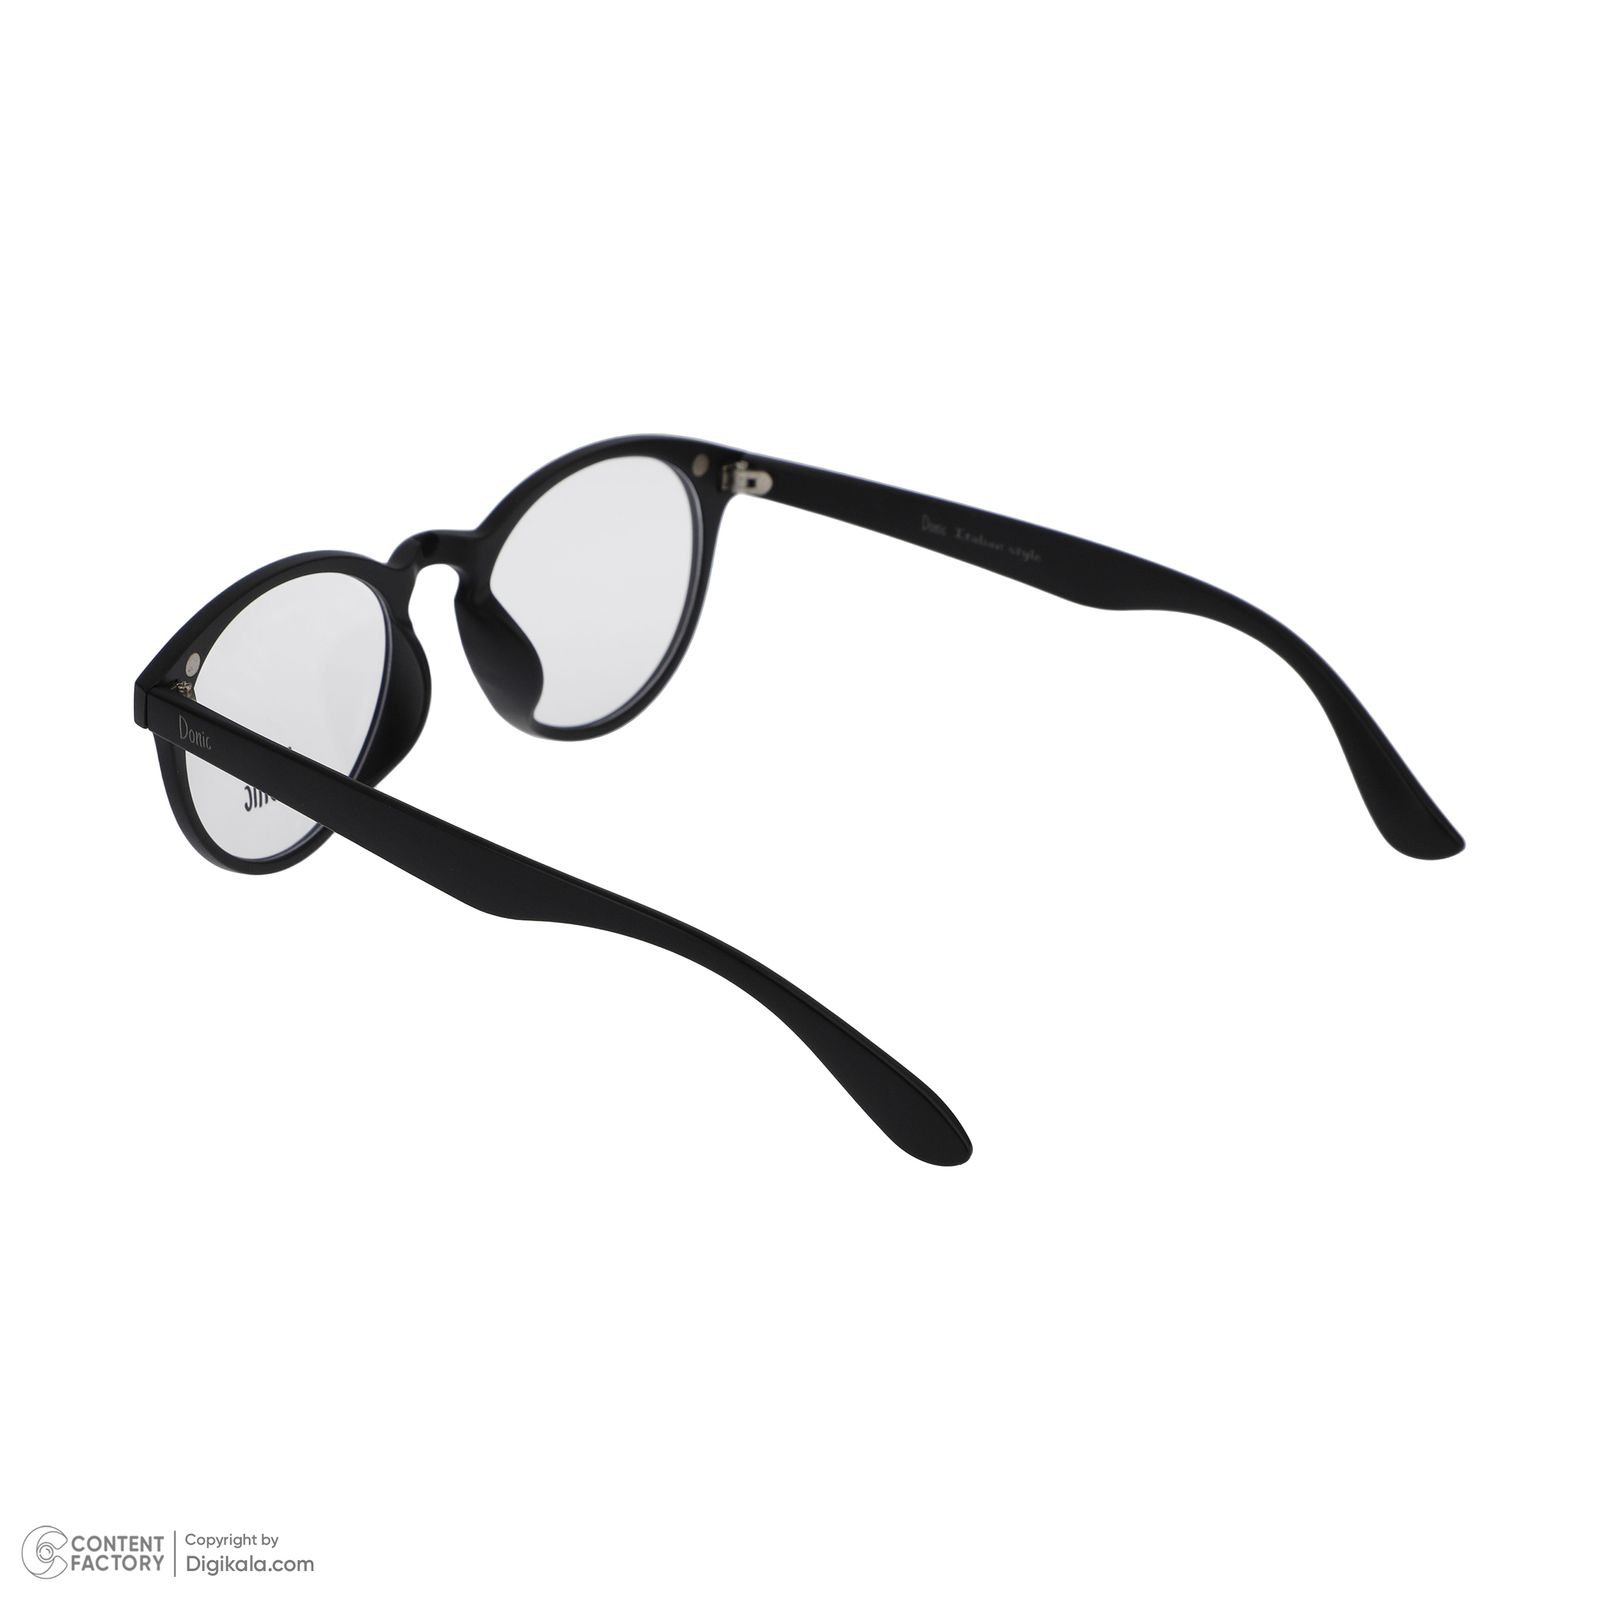 فریم عینک طبی دونیک مدل tr2205-c2 به همراه کاور آفتابی مجموعه 5 عددی -  - 5